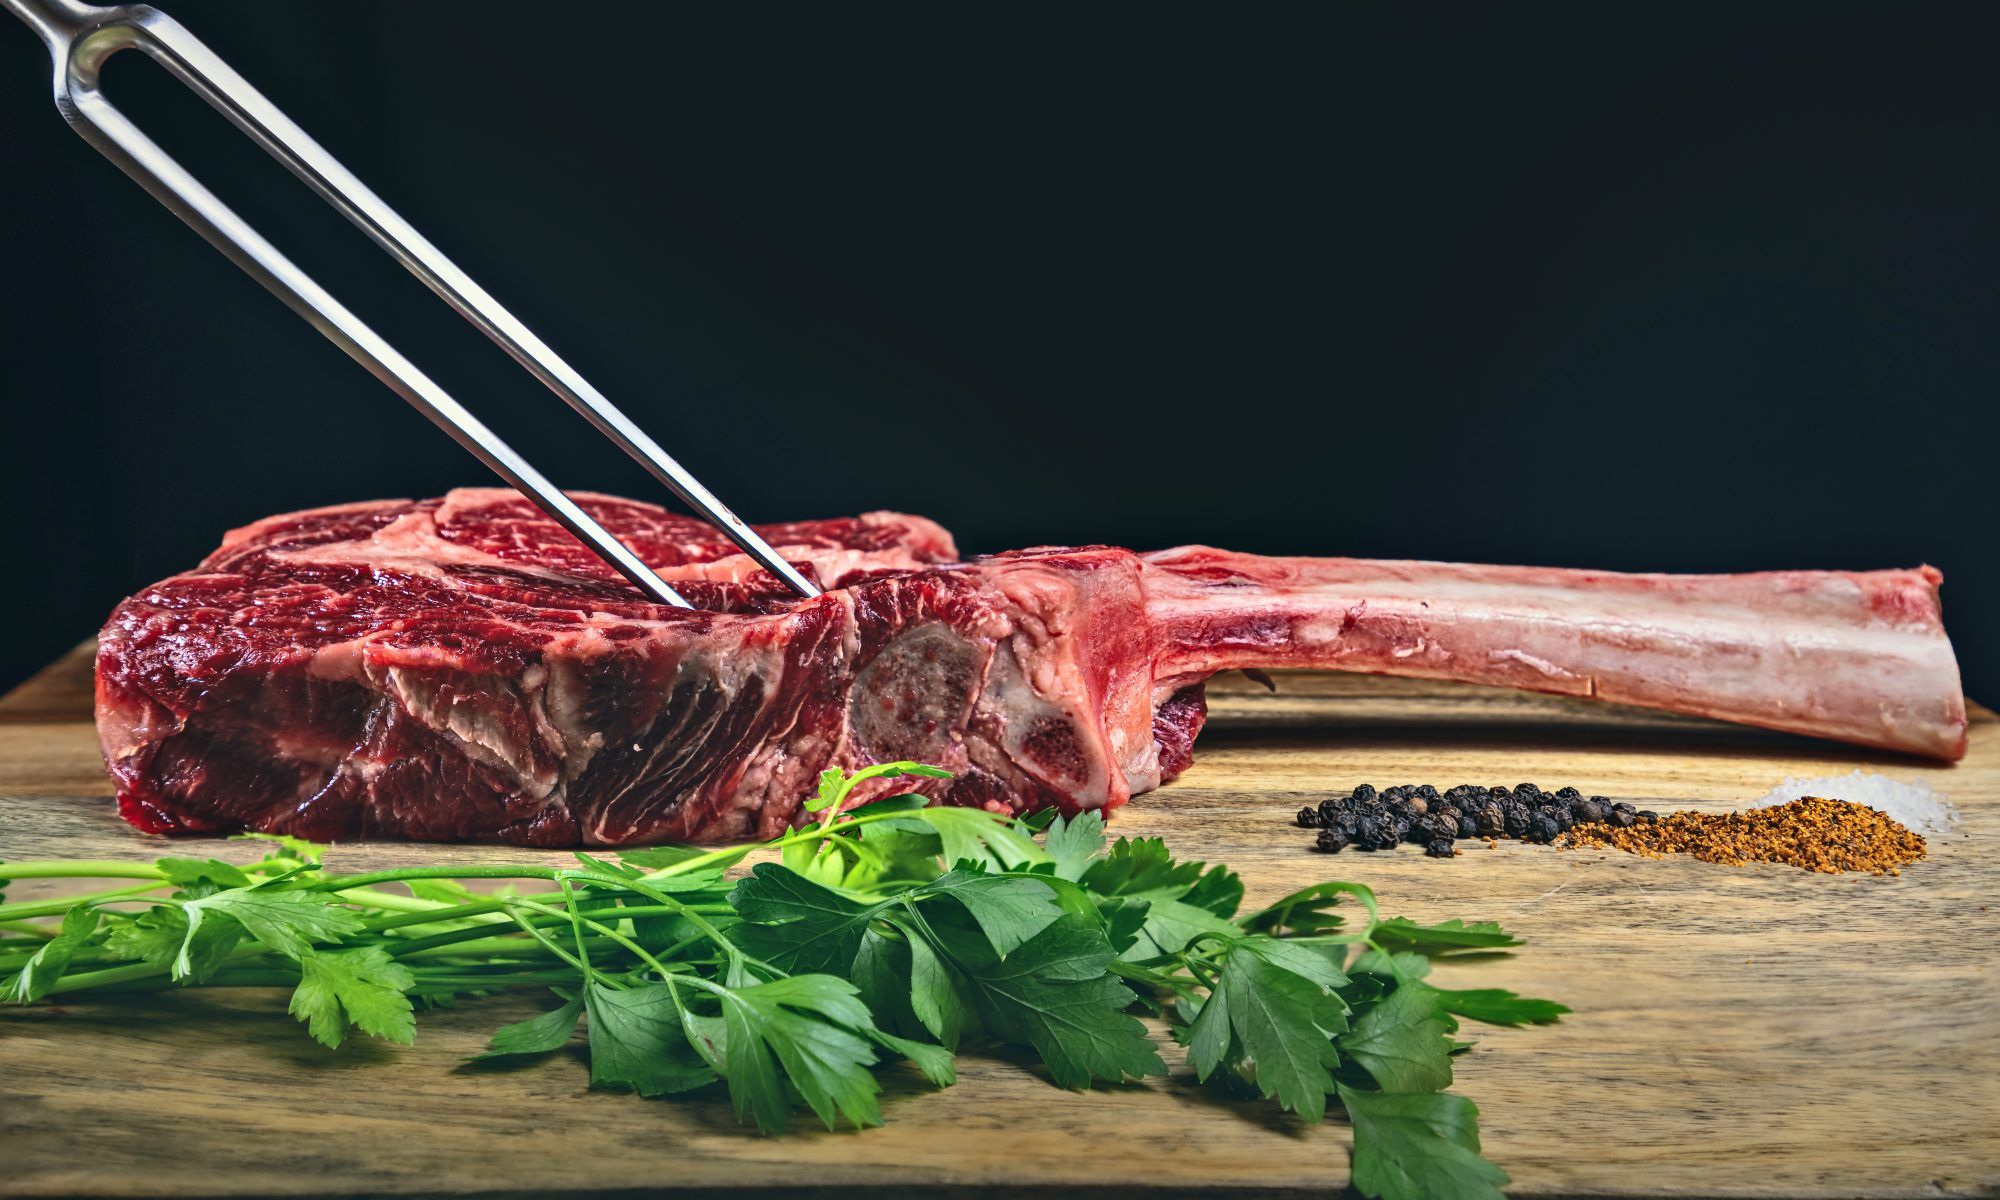 La carne de wagyu está considerada como la preferible carne de vacuno de todo el mundo. Su altísima calidad viene definida por una sucesión de parámetros entre los que resaltan el nivel de grasa infiltrada y la calidad de la misma.